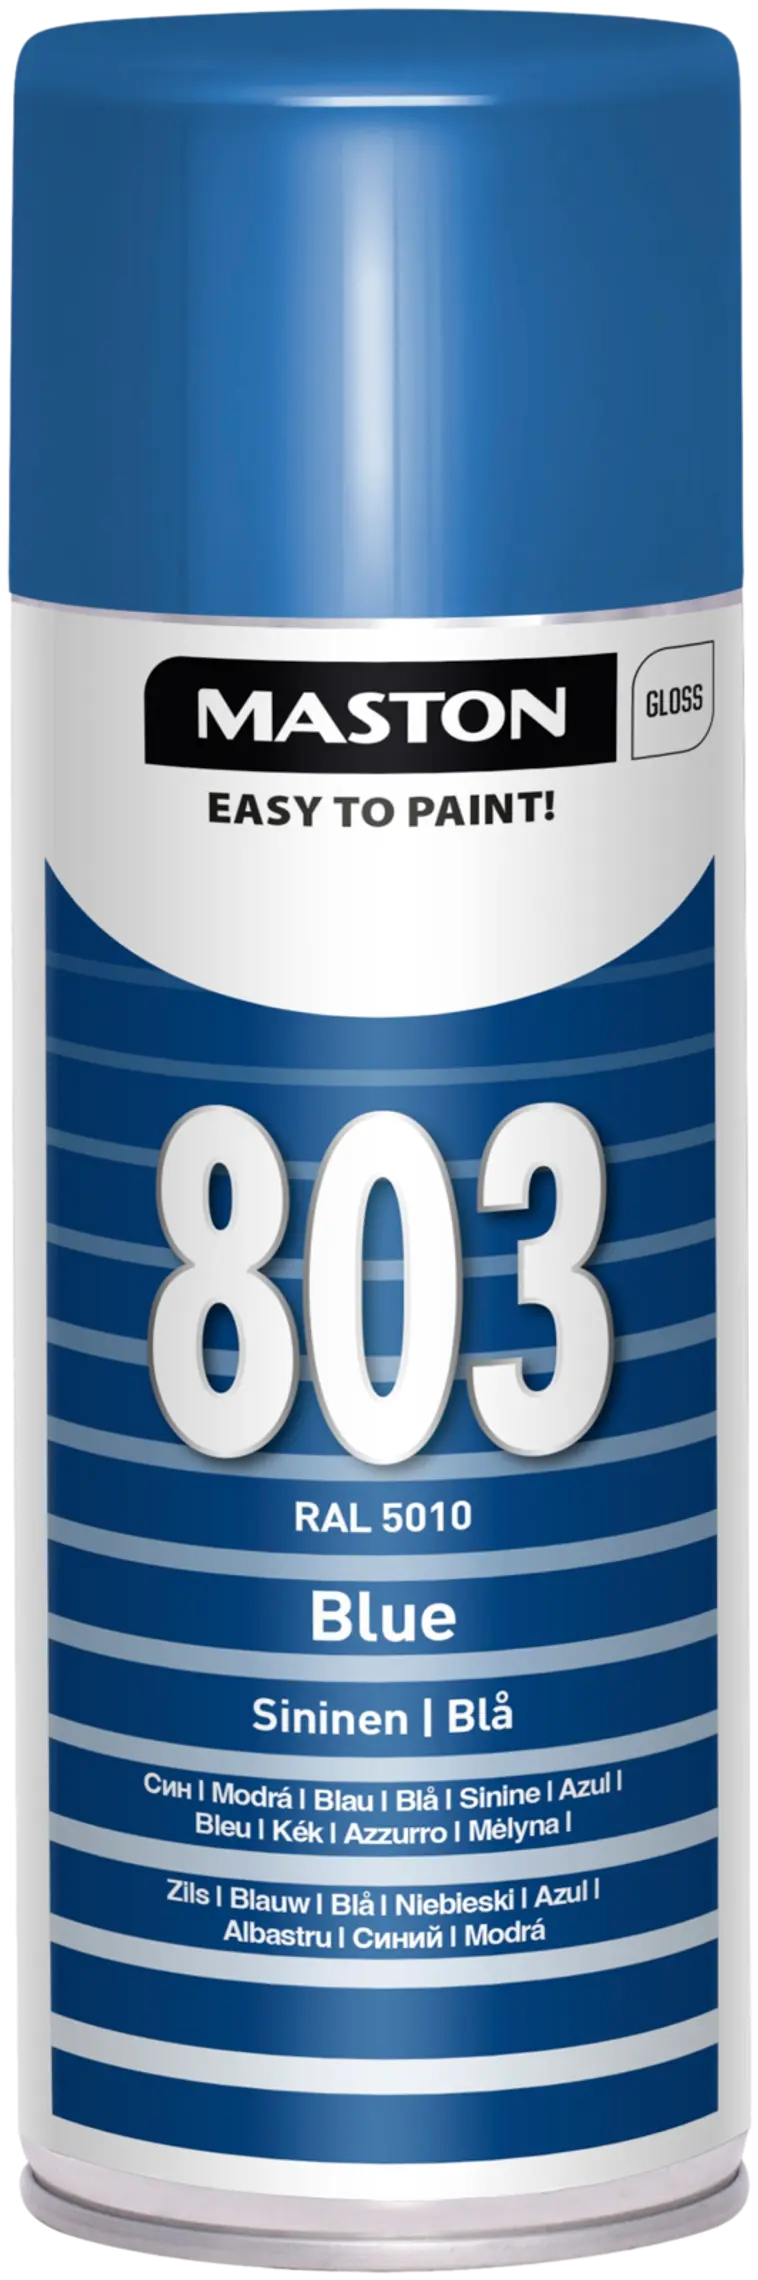 Maston spraymaali sininen 803 400ml RAL 5010